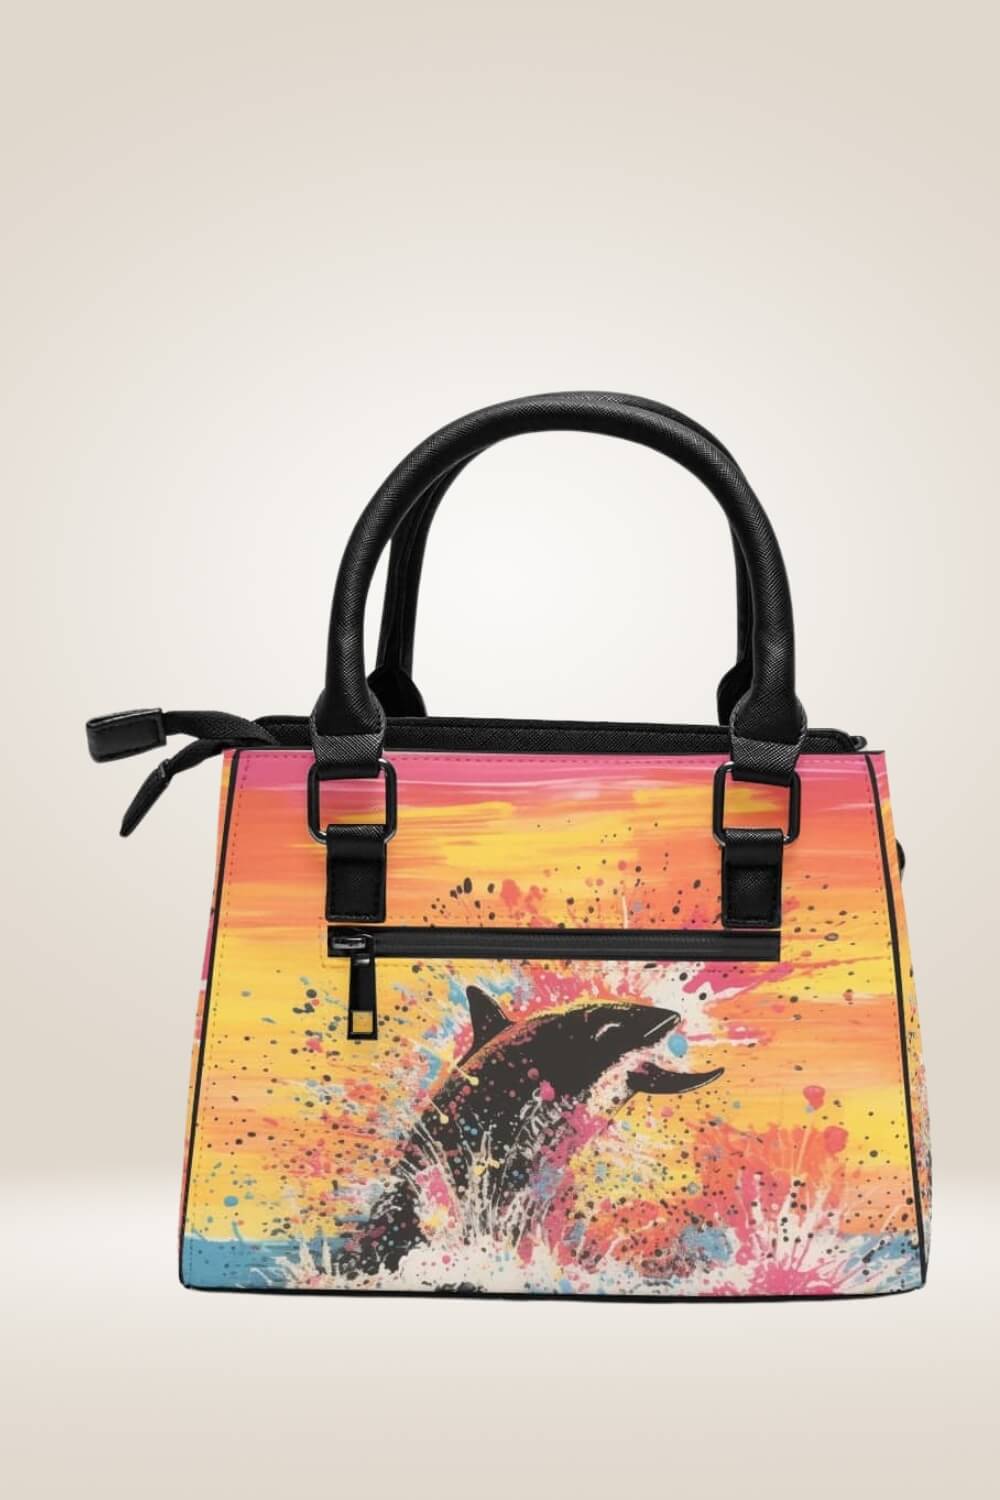 Sunset Whale Orange Satchel Bag - TGC Boutique - Satchel Handbag